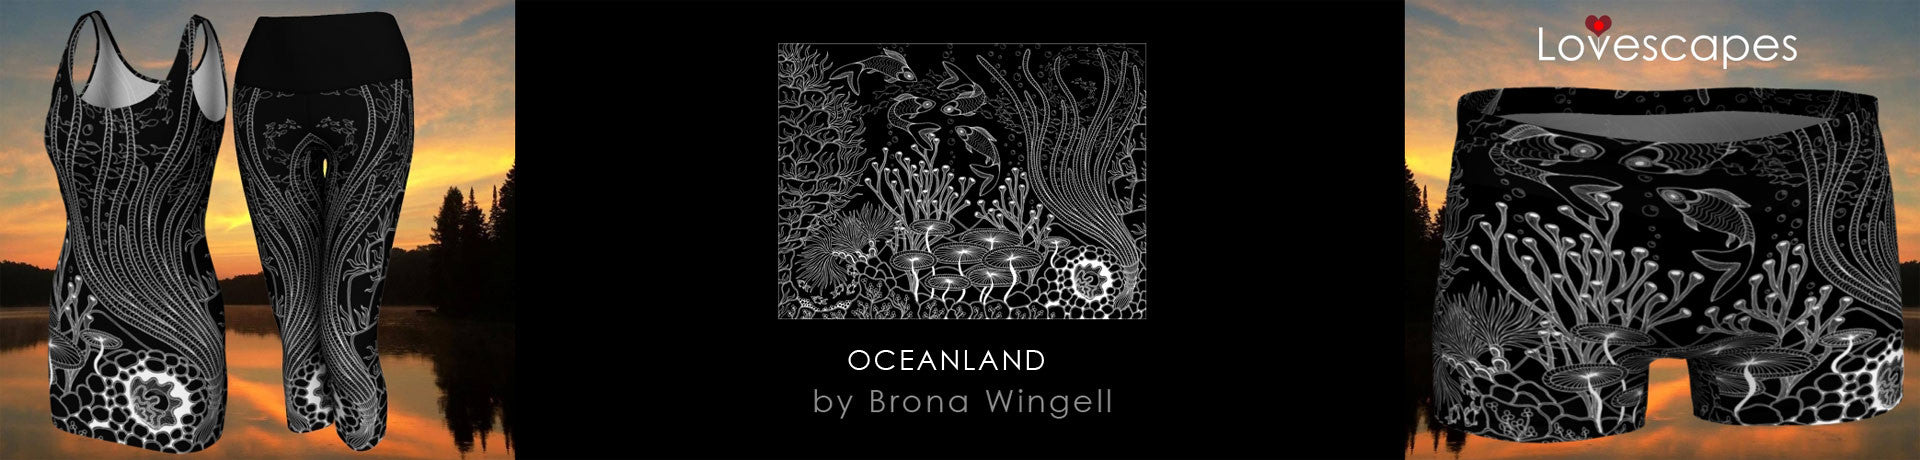 Oceanland